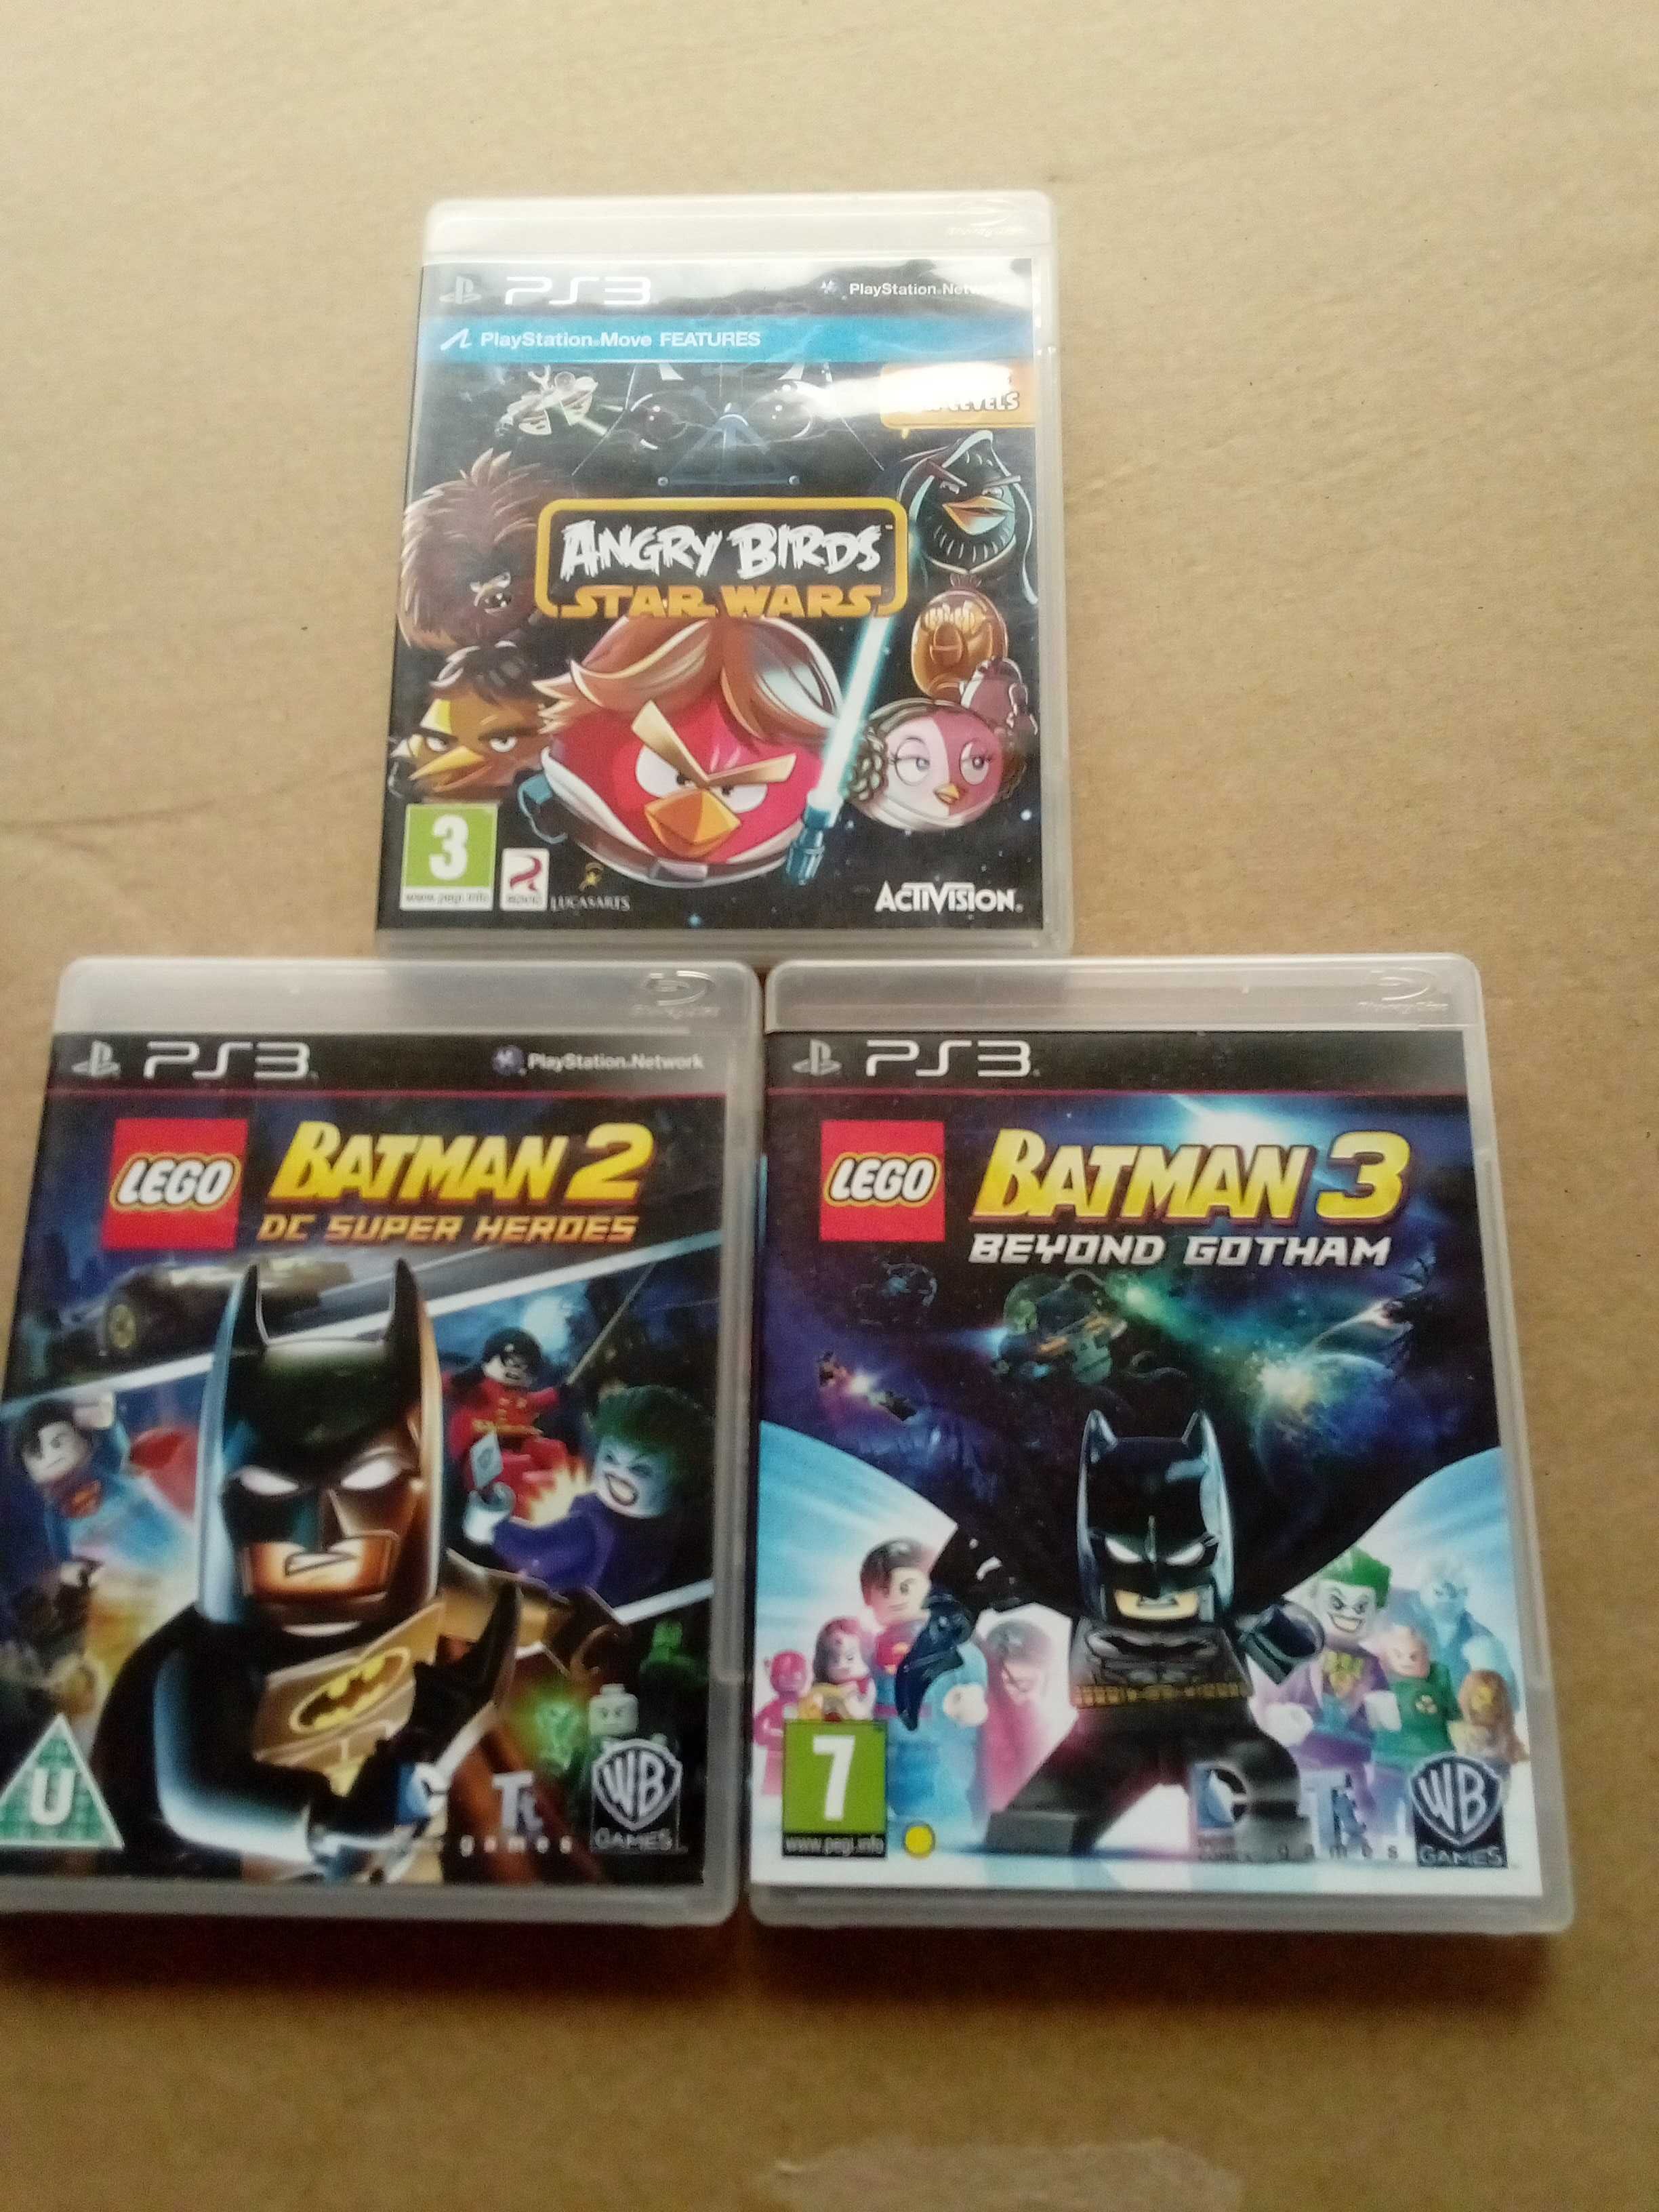 jogos PS3 - Angry Birds e Batman Lego